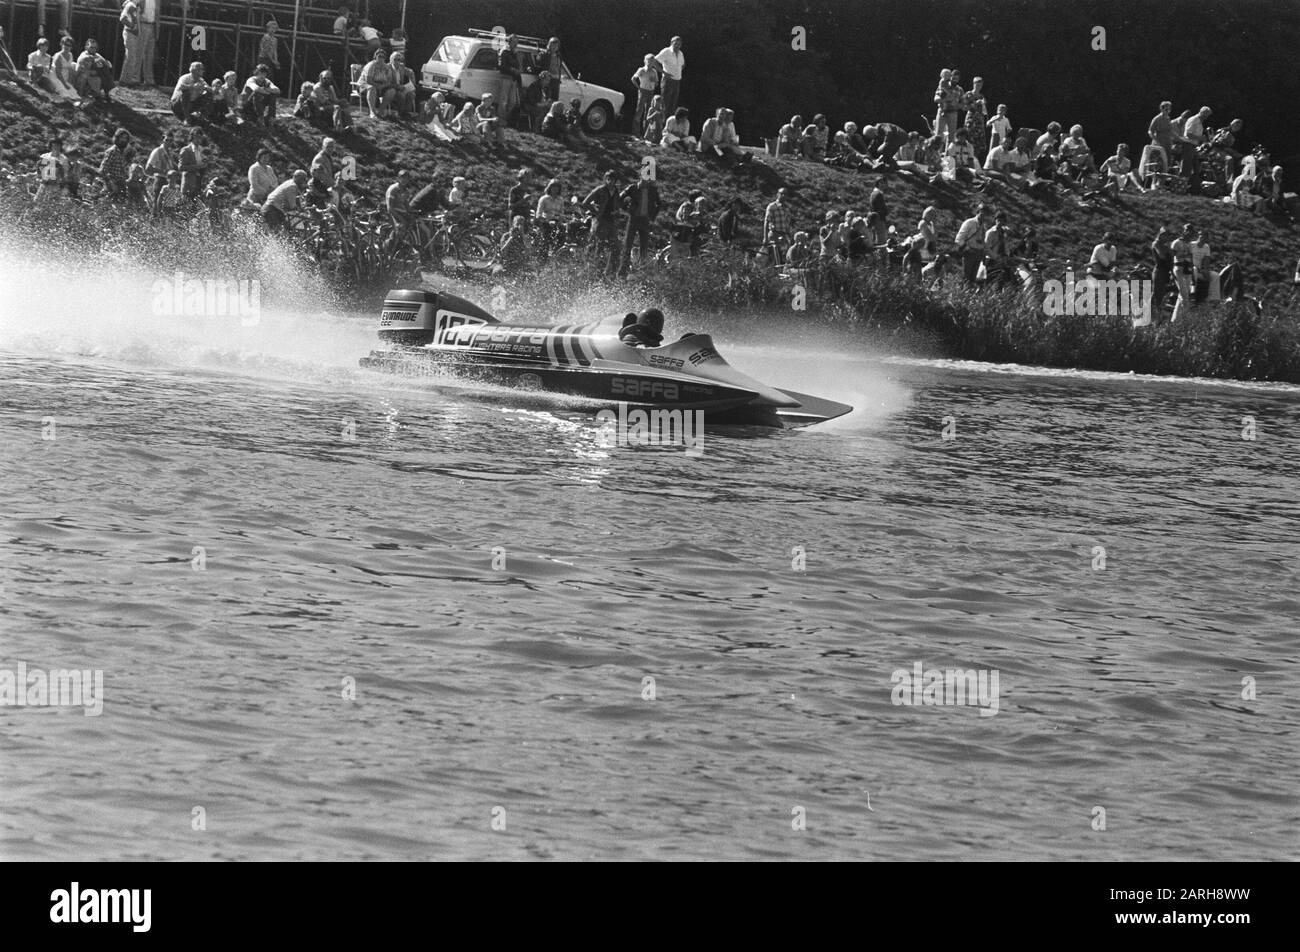 Speedboot-Rennen der Weltmeisterschaften OI-Klasse auf Bosbaan; Renato Molinari (Italien) in Aktion Datum: 4. September 1977 Ort: Italien Schlagwörter: Schnellboot-Rennen Stockfoto